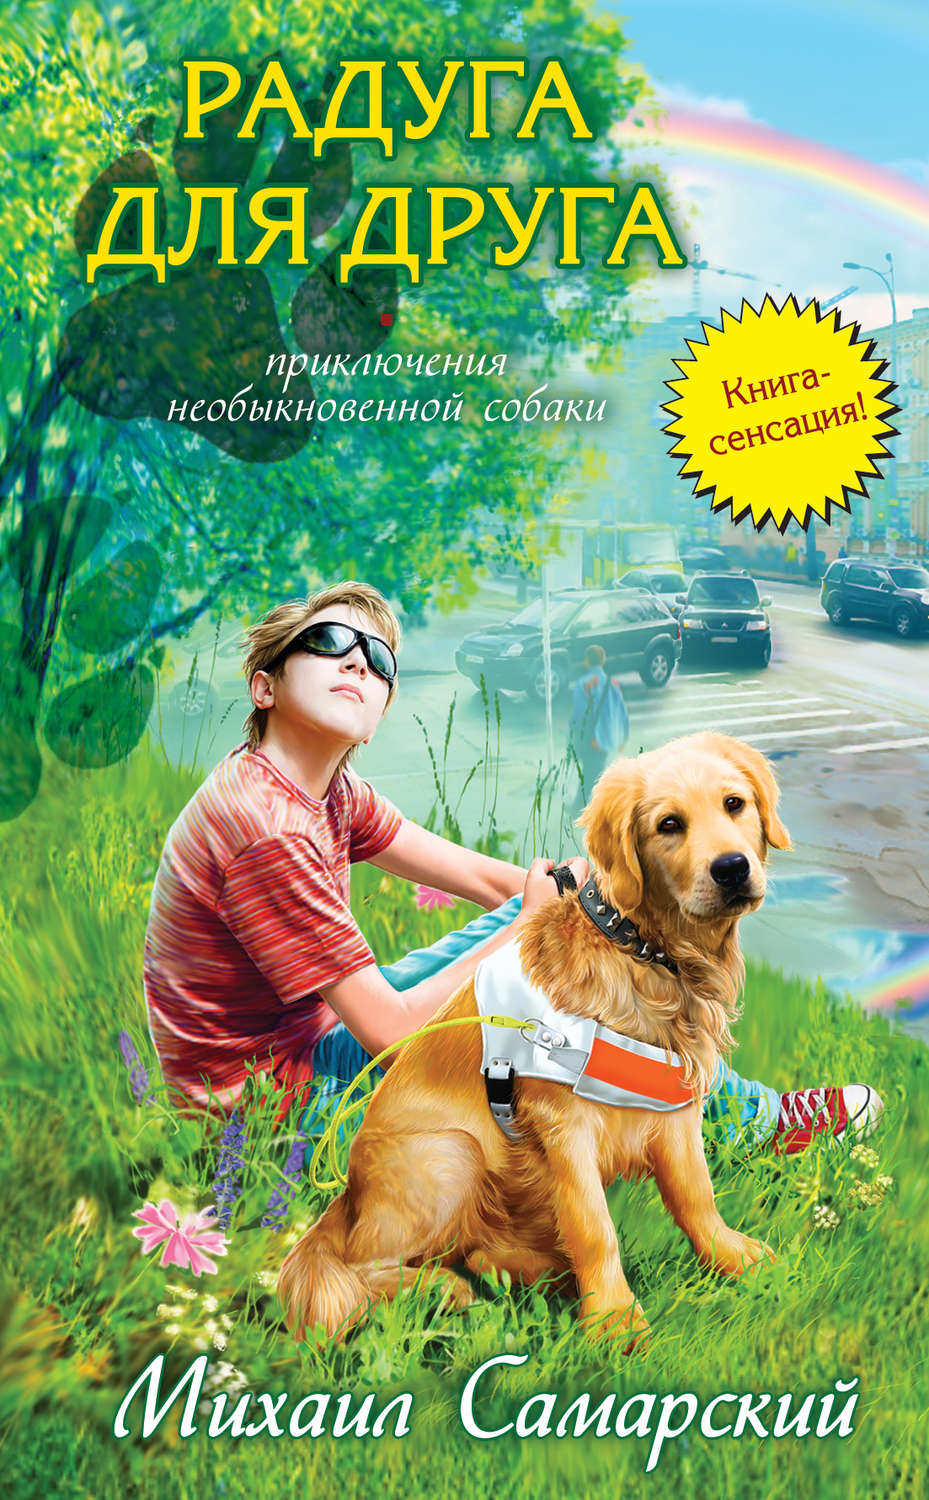 Скачать бесплатно книги для подростков про животных